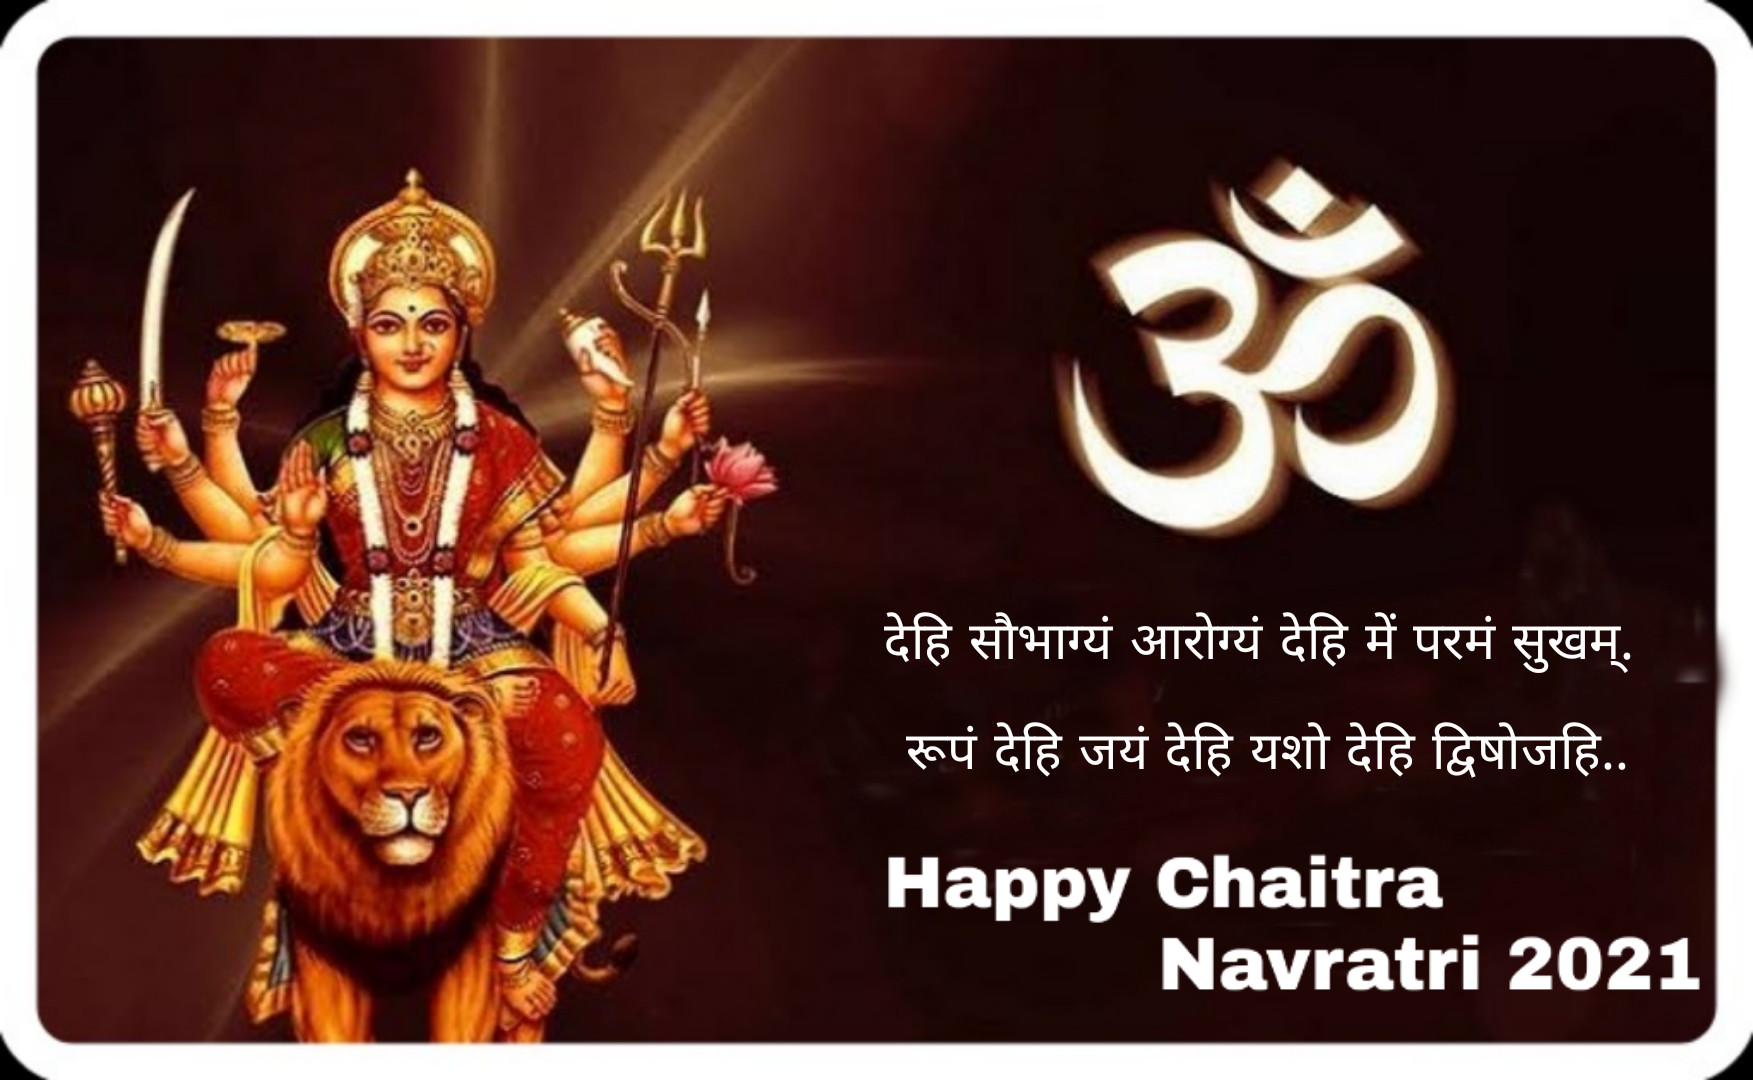 Happy Chaitra Navratri 2021: Chaitra Navratri Photos Images Quotes ...